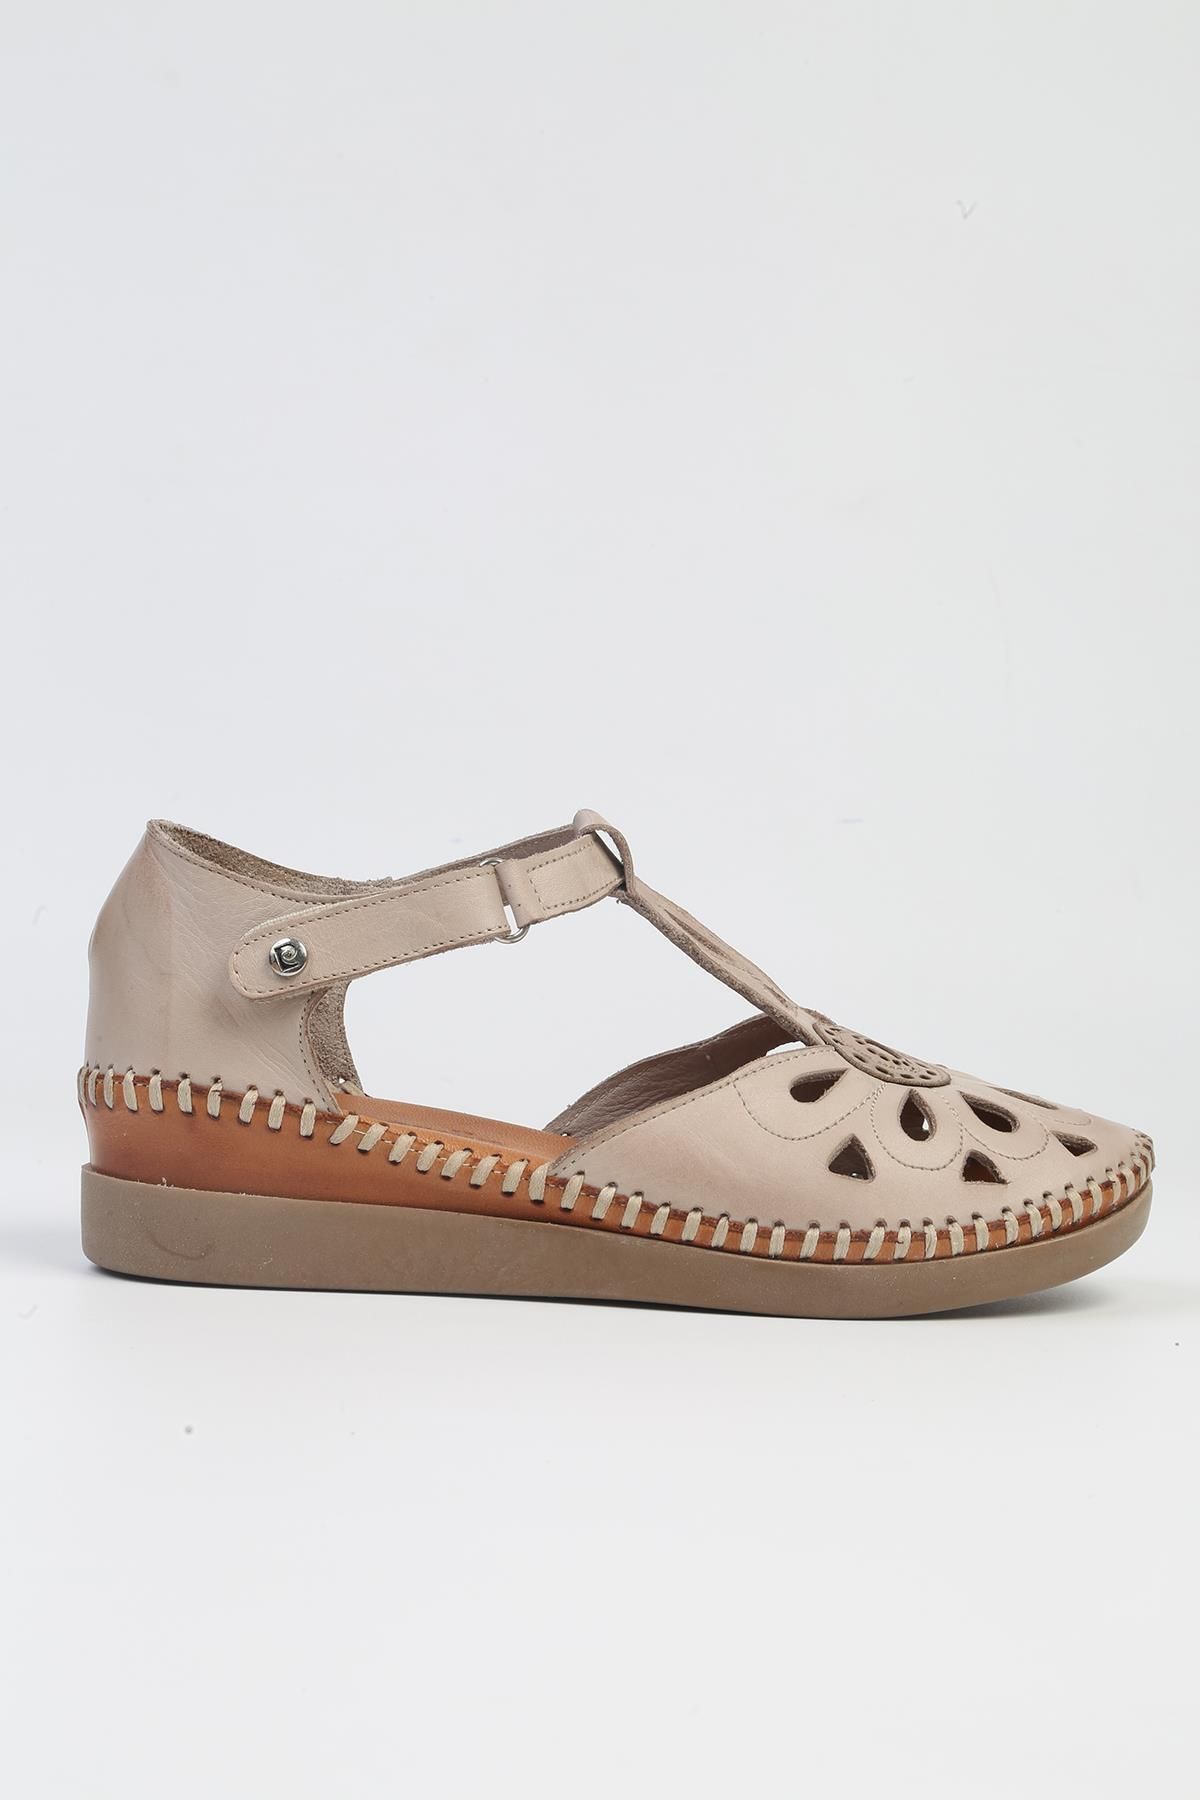 Pierre Cardin ® | PC-53024- 3963 Vizon-Kadın Topuklu Günlük Ayakkabı